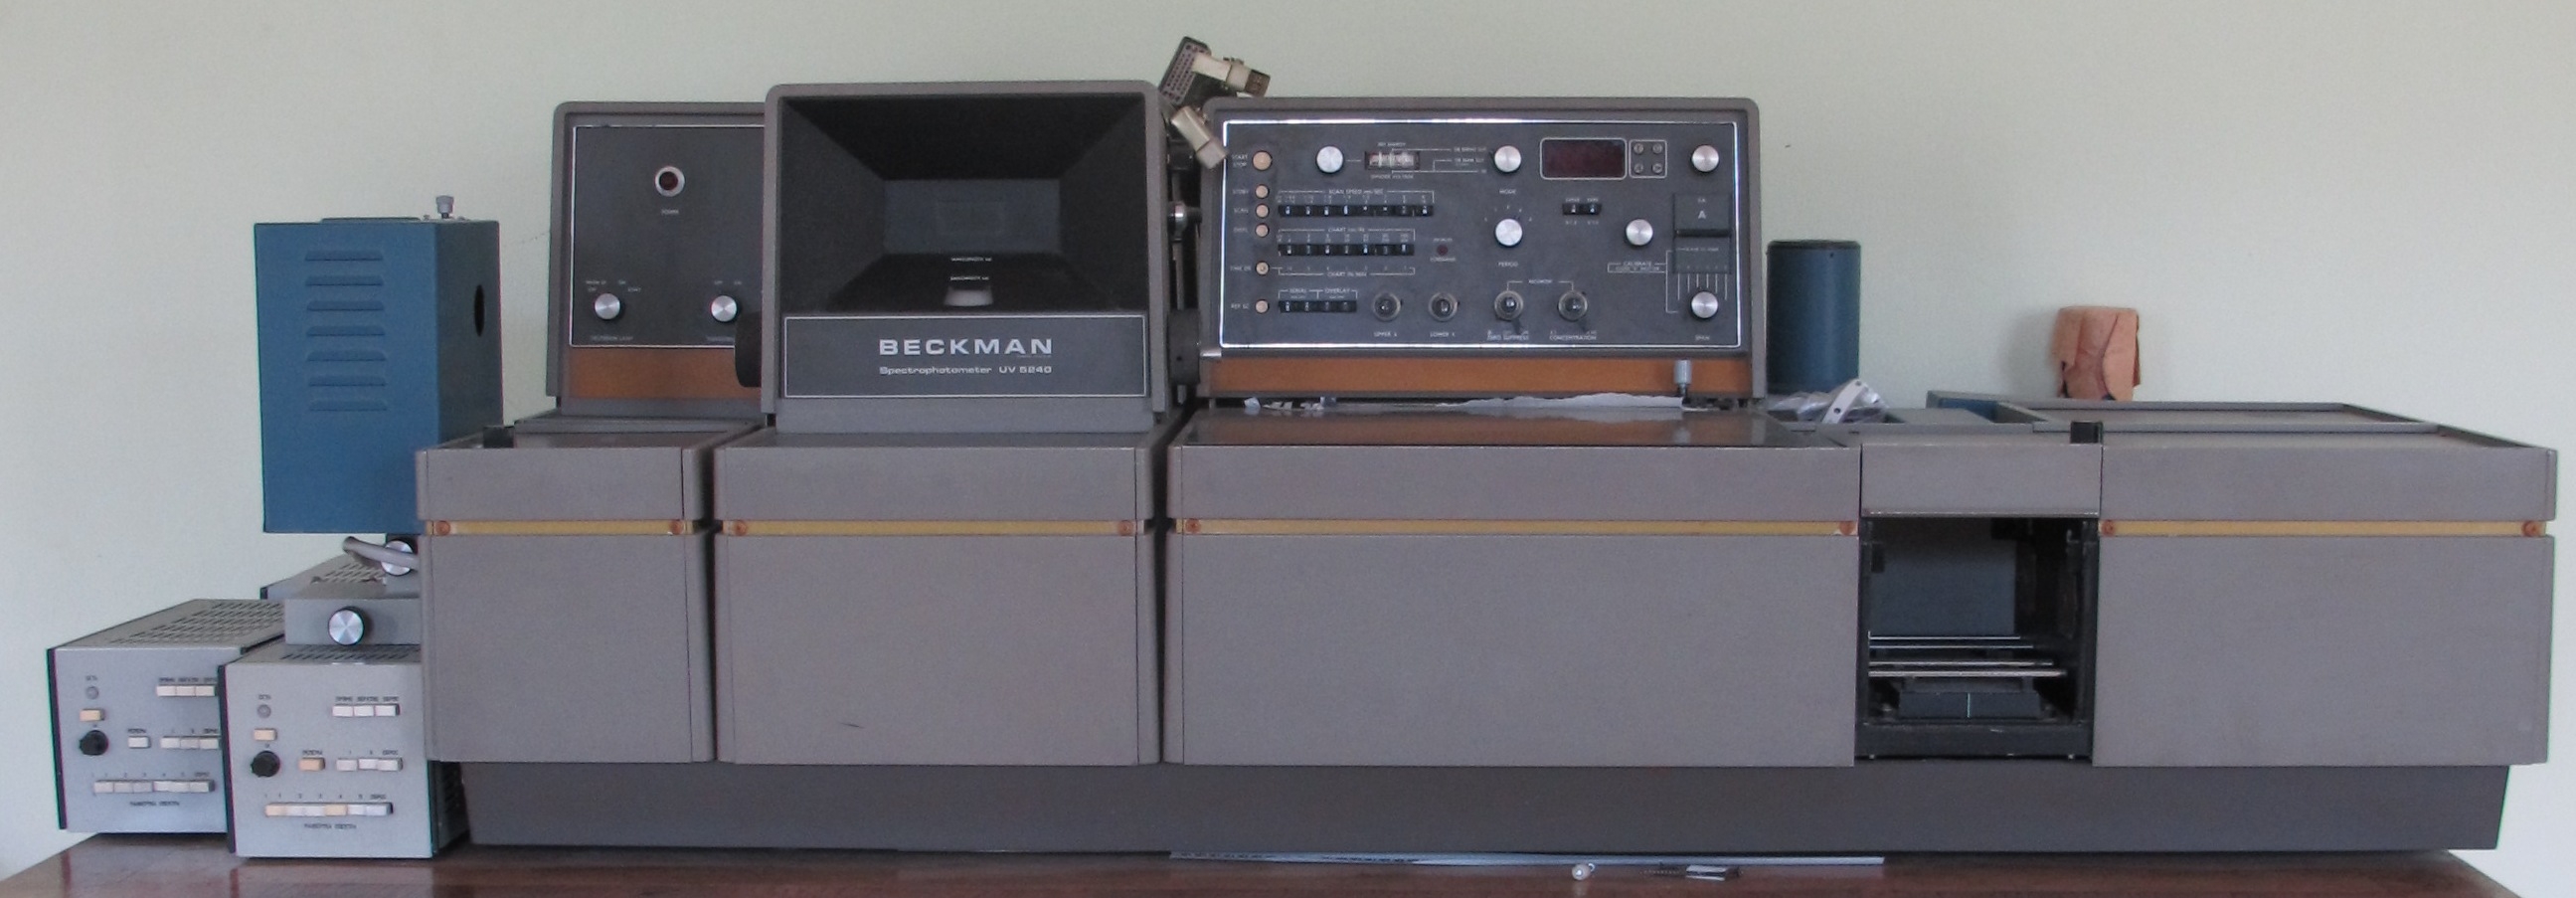 Beckman 5240 UV-Vis Spectrophotometer